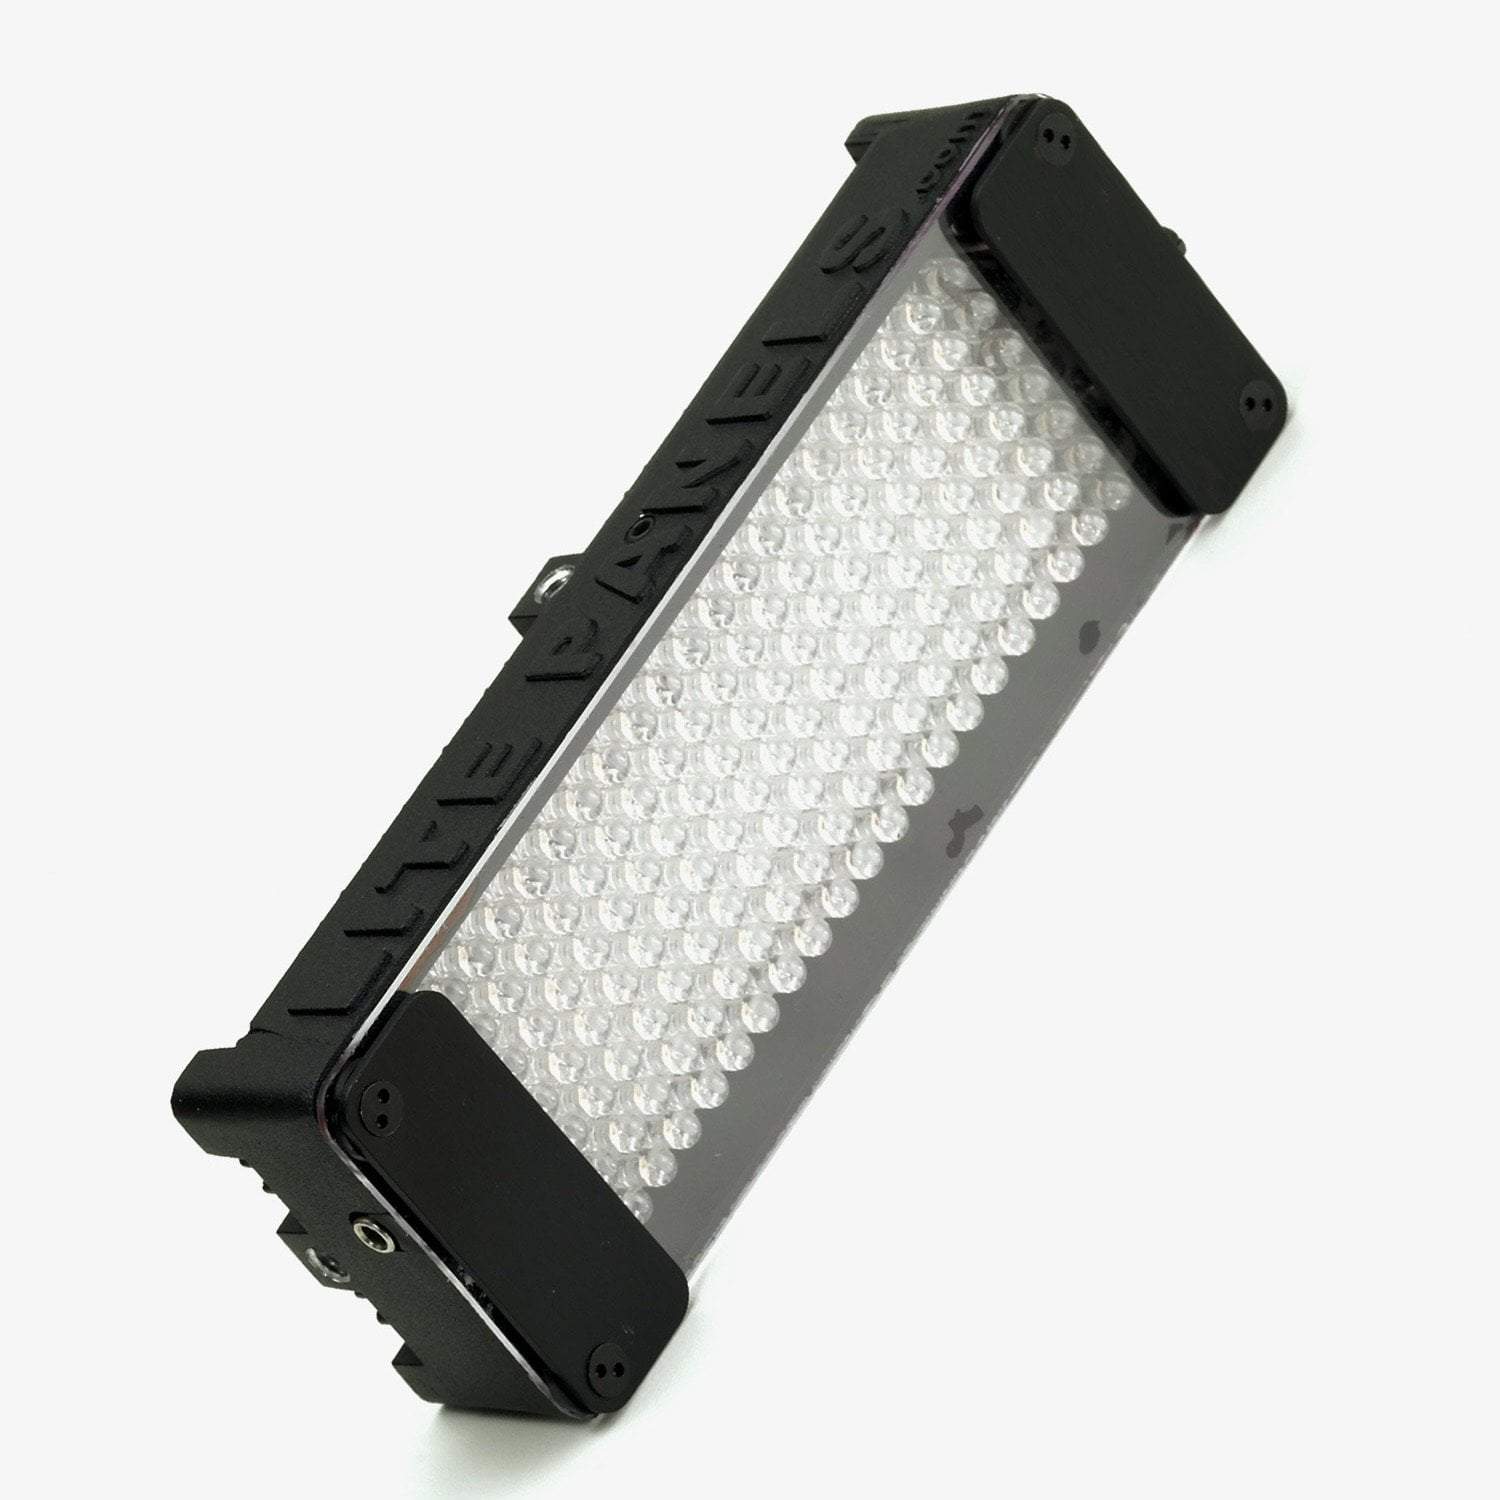 Litepanels Mini LED LITEPANELS Mini Daylight - Occasion DopPRO